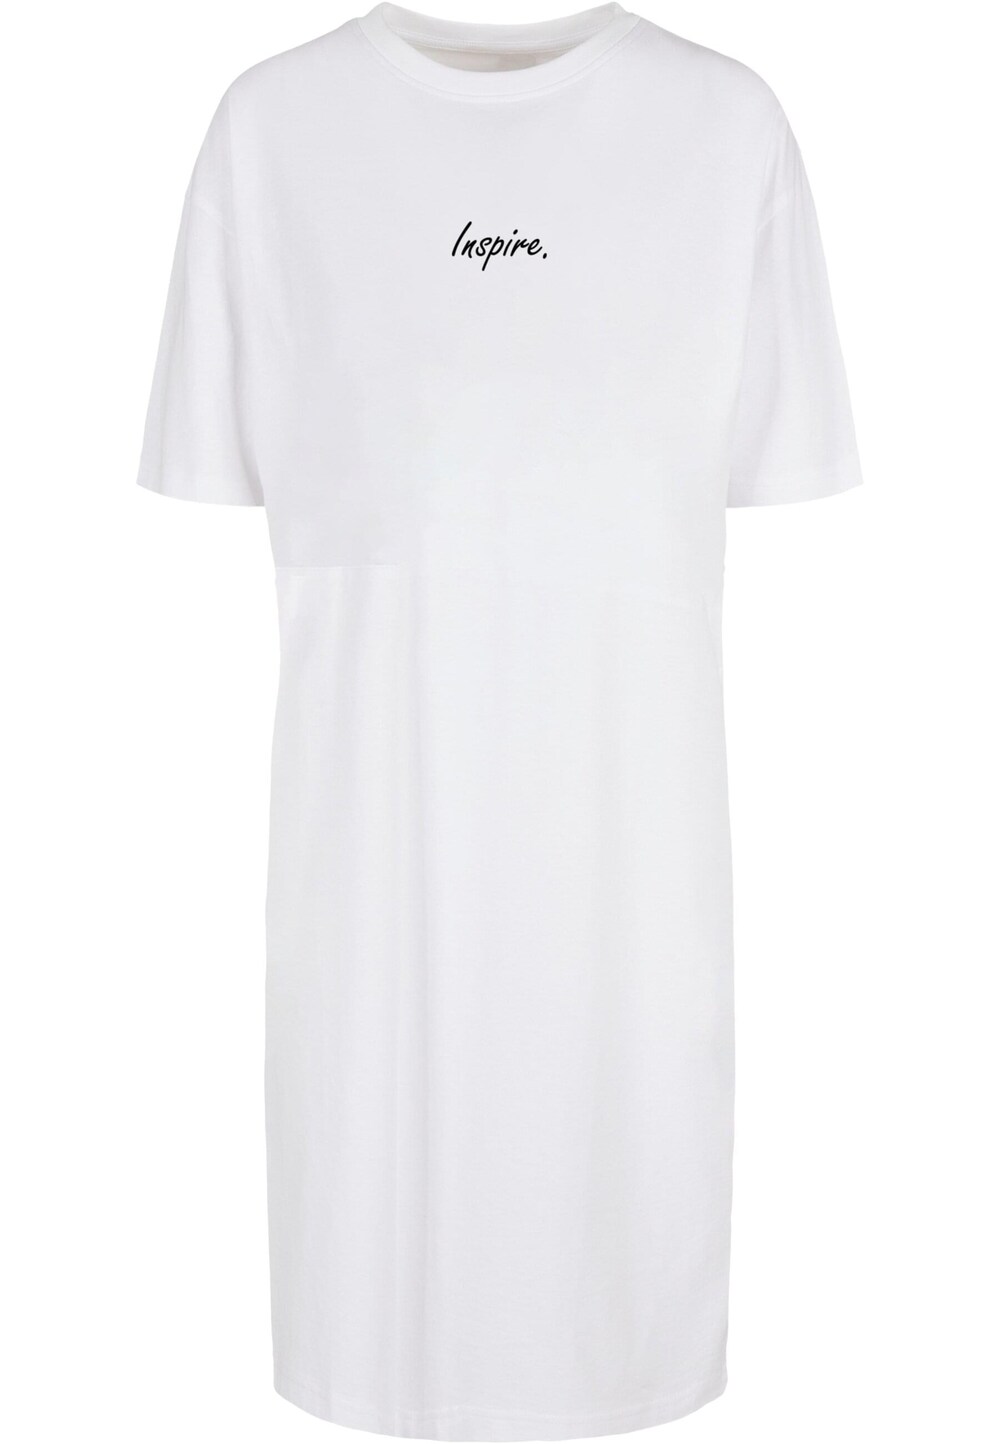 Платье Merchcode Inspire, белый inspire платье кимоно удлиненное белый